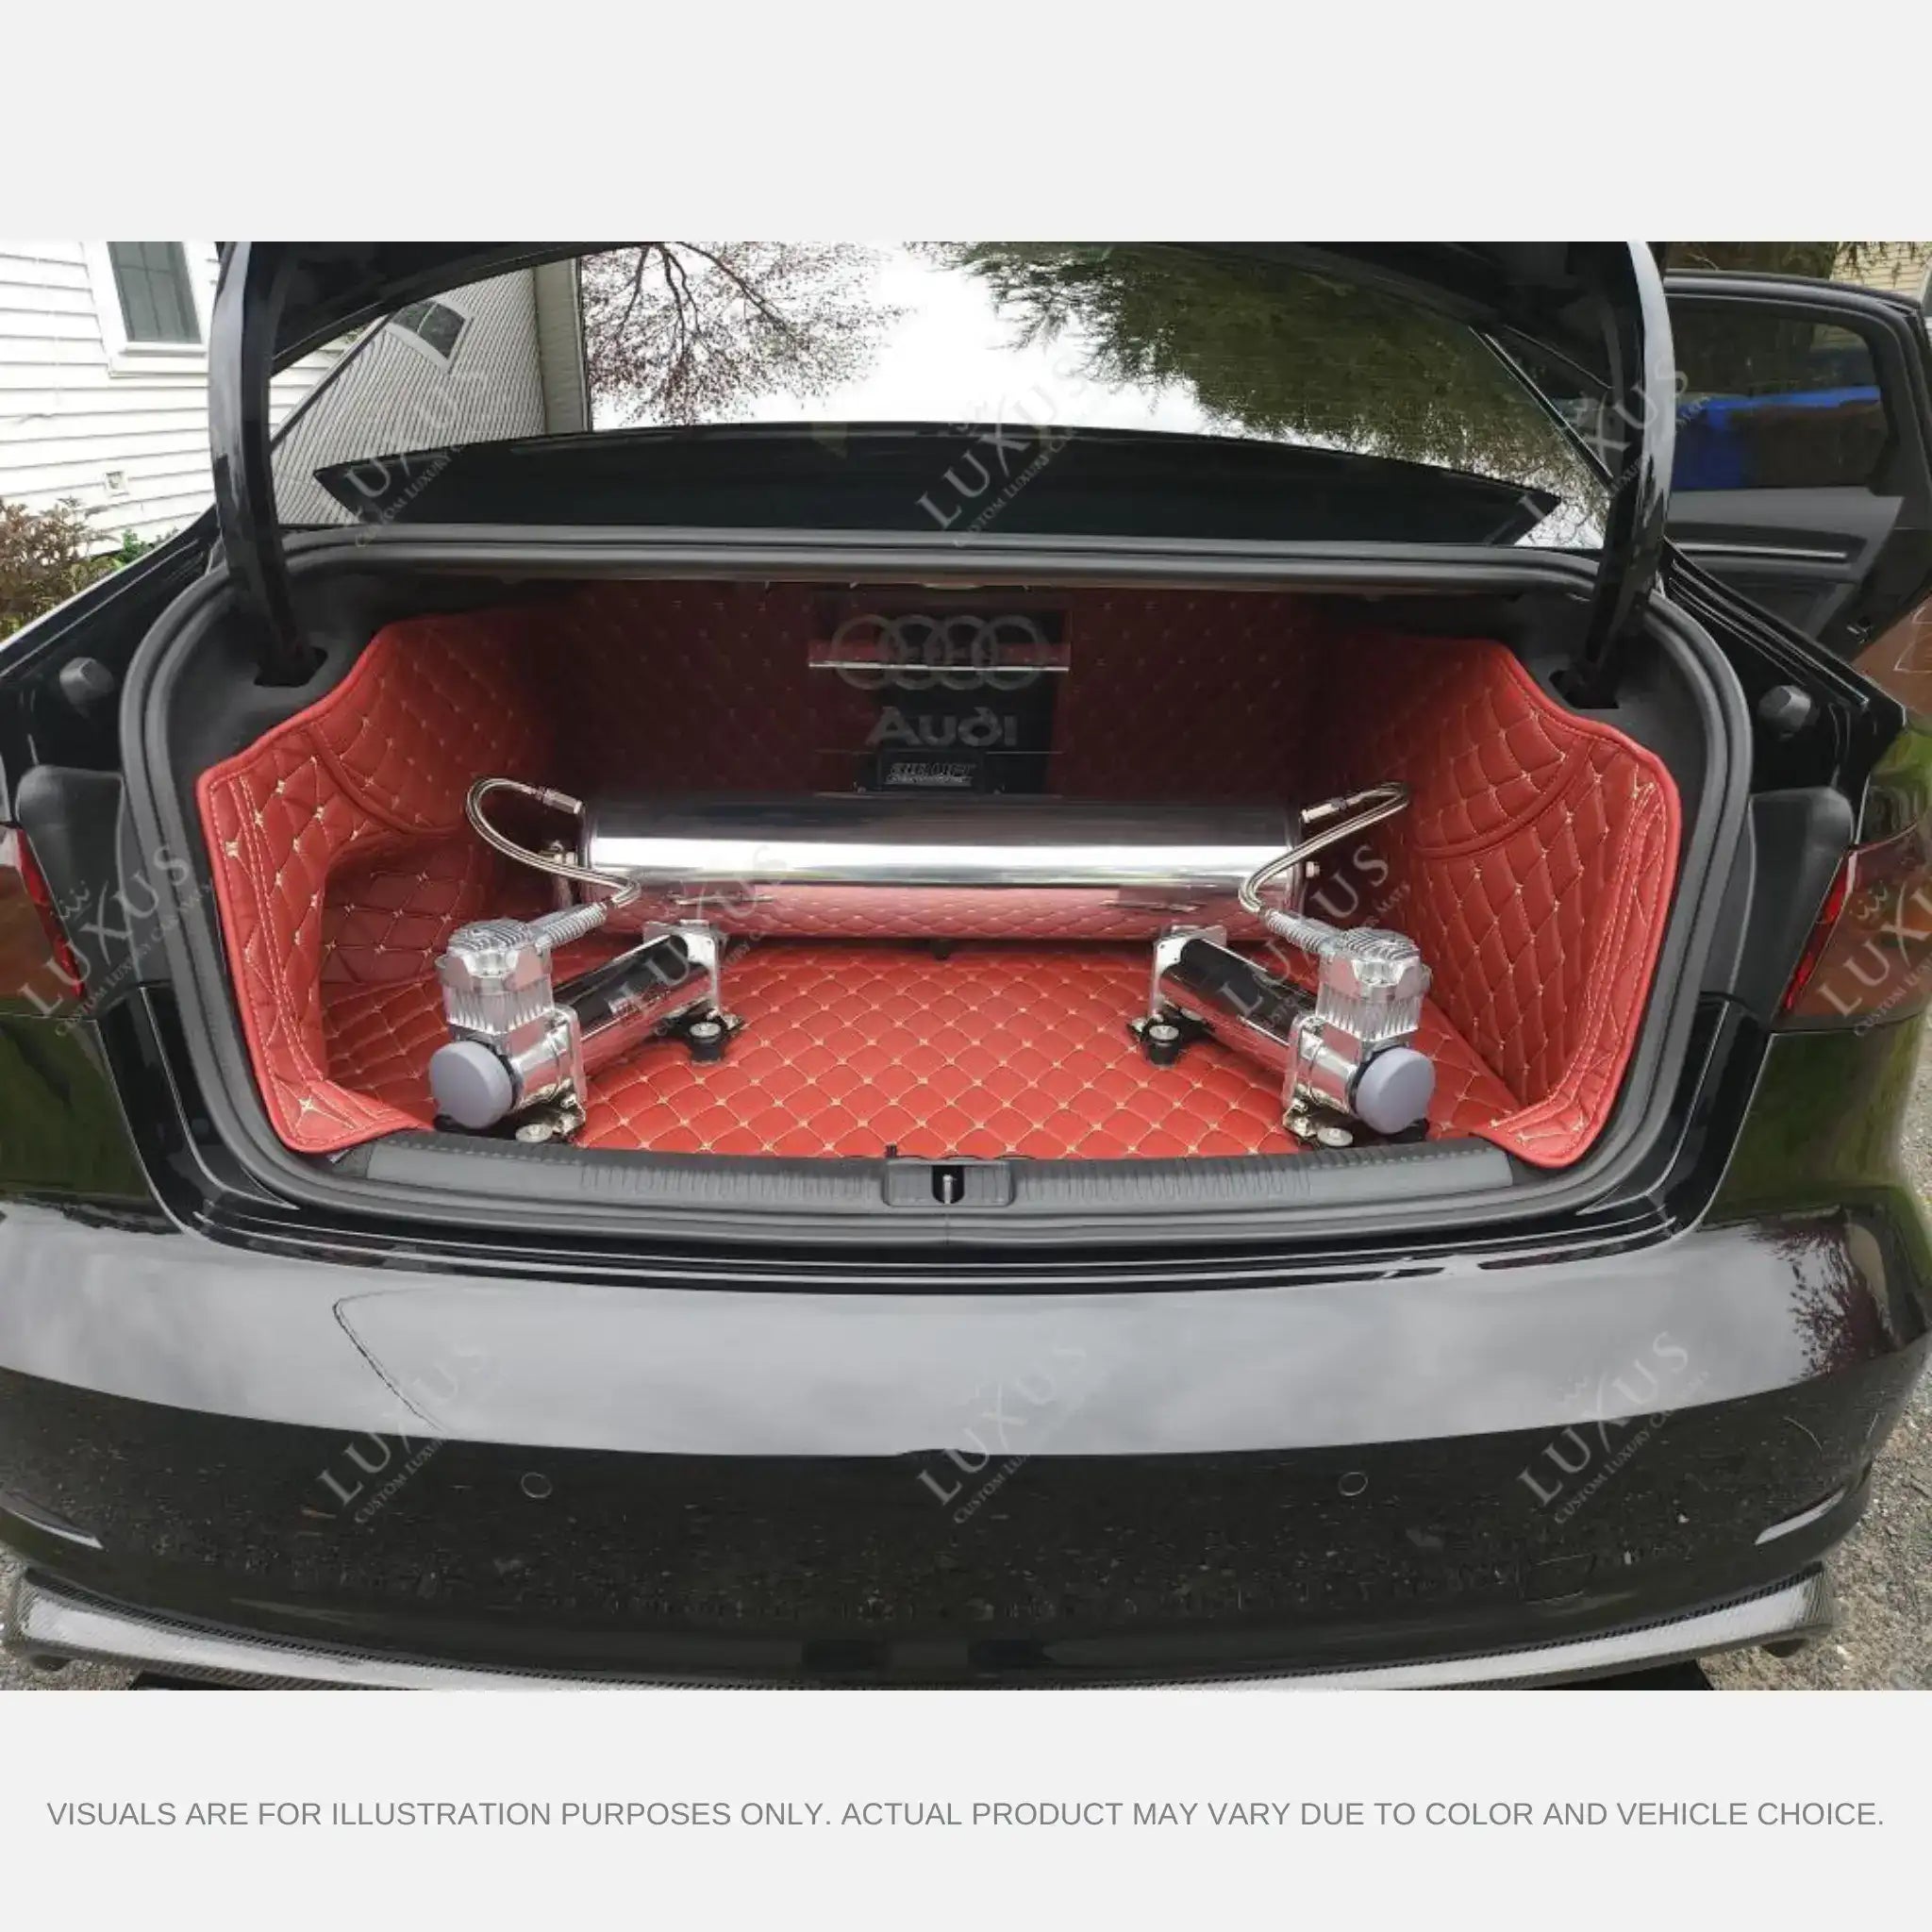 NEW Ferrari Red 3D Honeycomb Luxury Boot/Trunk Mat